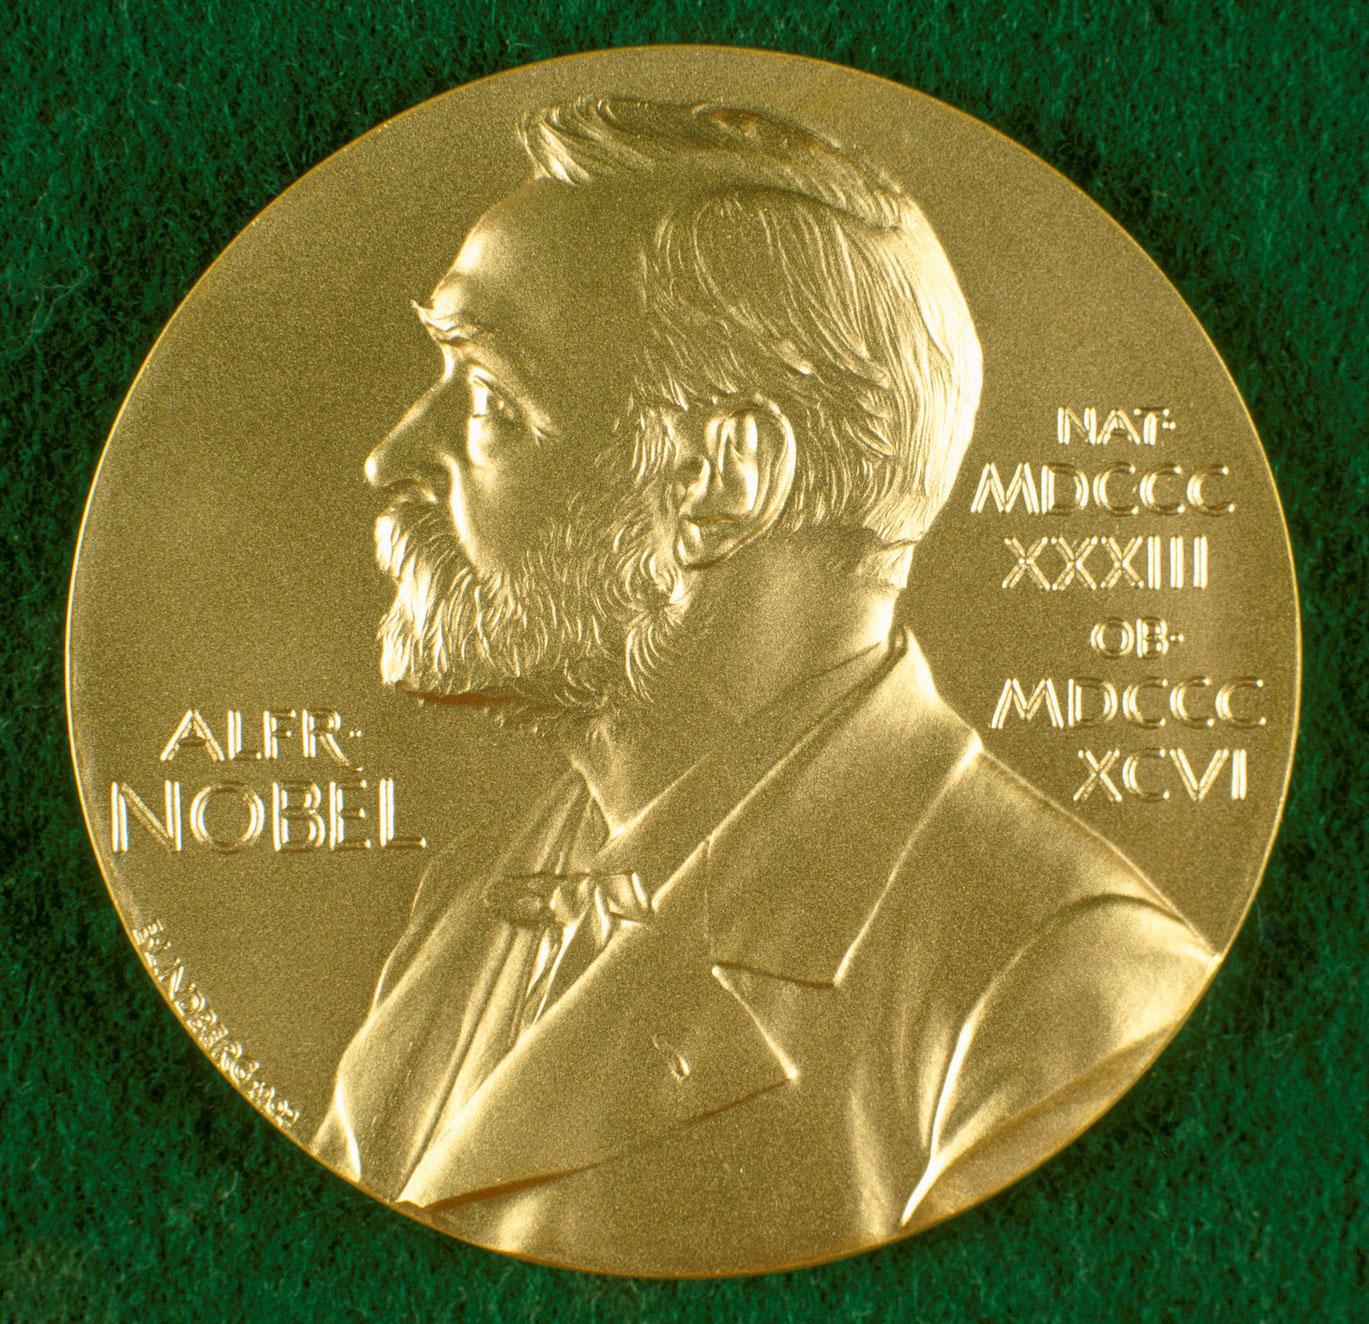 नोबेल पुरस्कारको चर्चामा कोभिड खोपका आविष्कारक